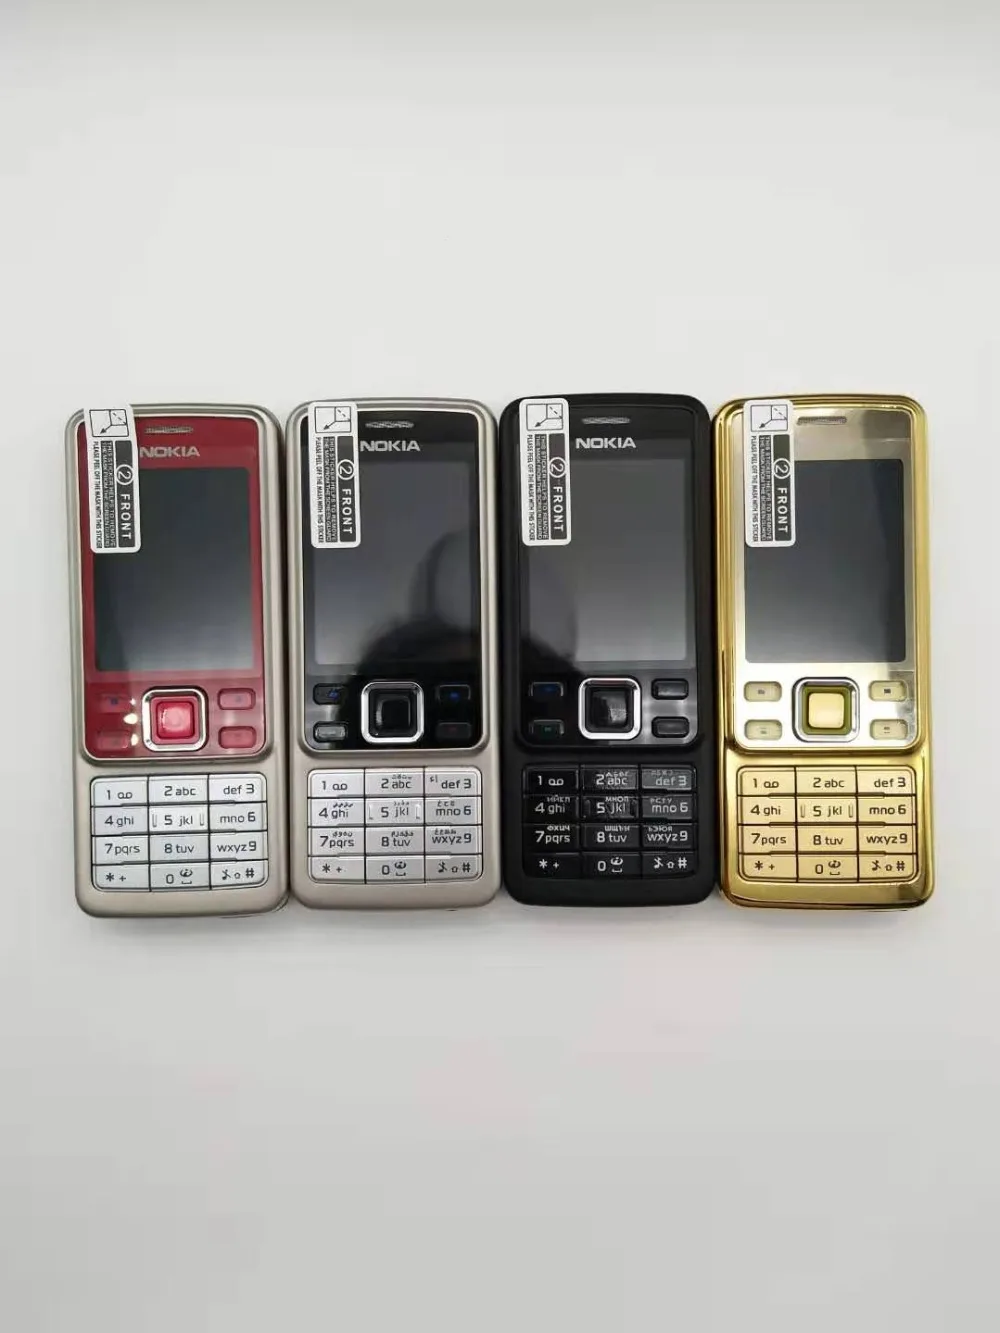 Оригинальный мобильный телефон Nokia 6300 классический мобильный телефон 6300 золото и один год гарантии и русская клавиатура арабская